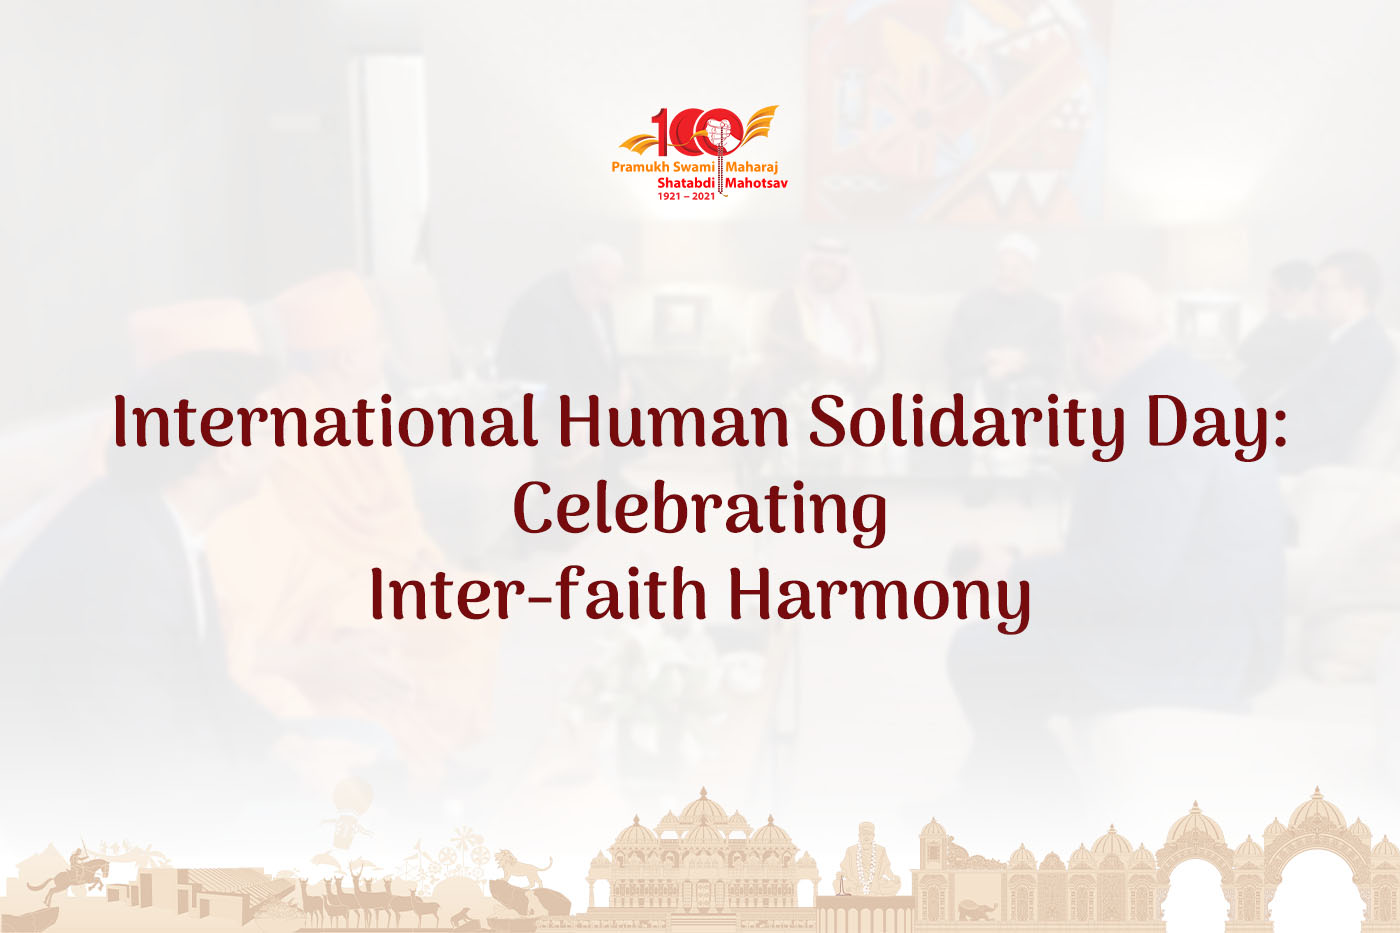 International Human Solidarity Day: Celebrating Inter-faith Harmony